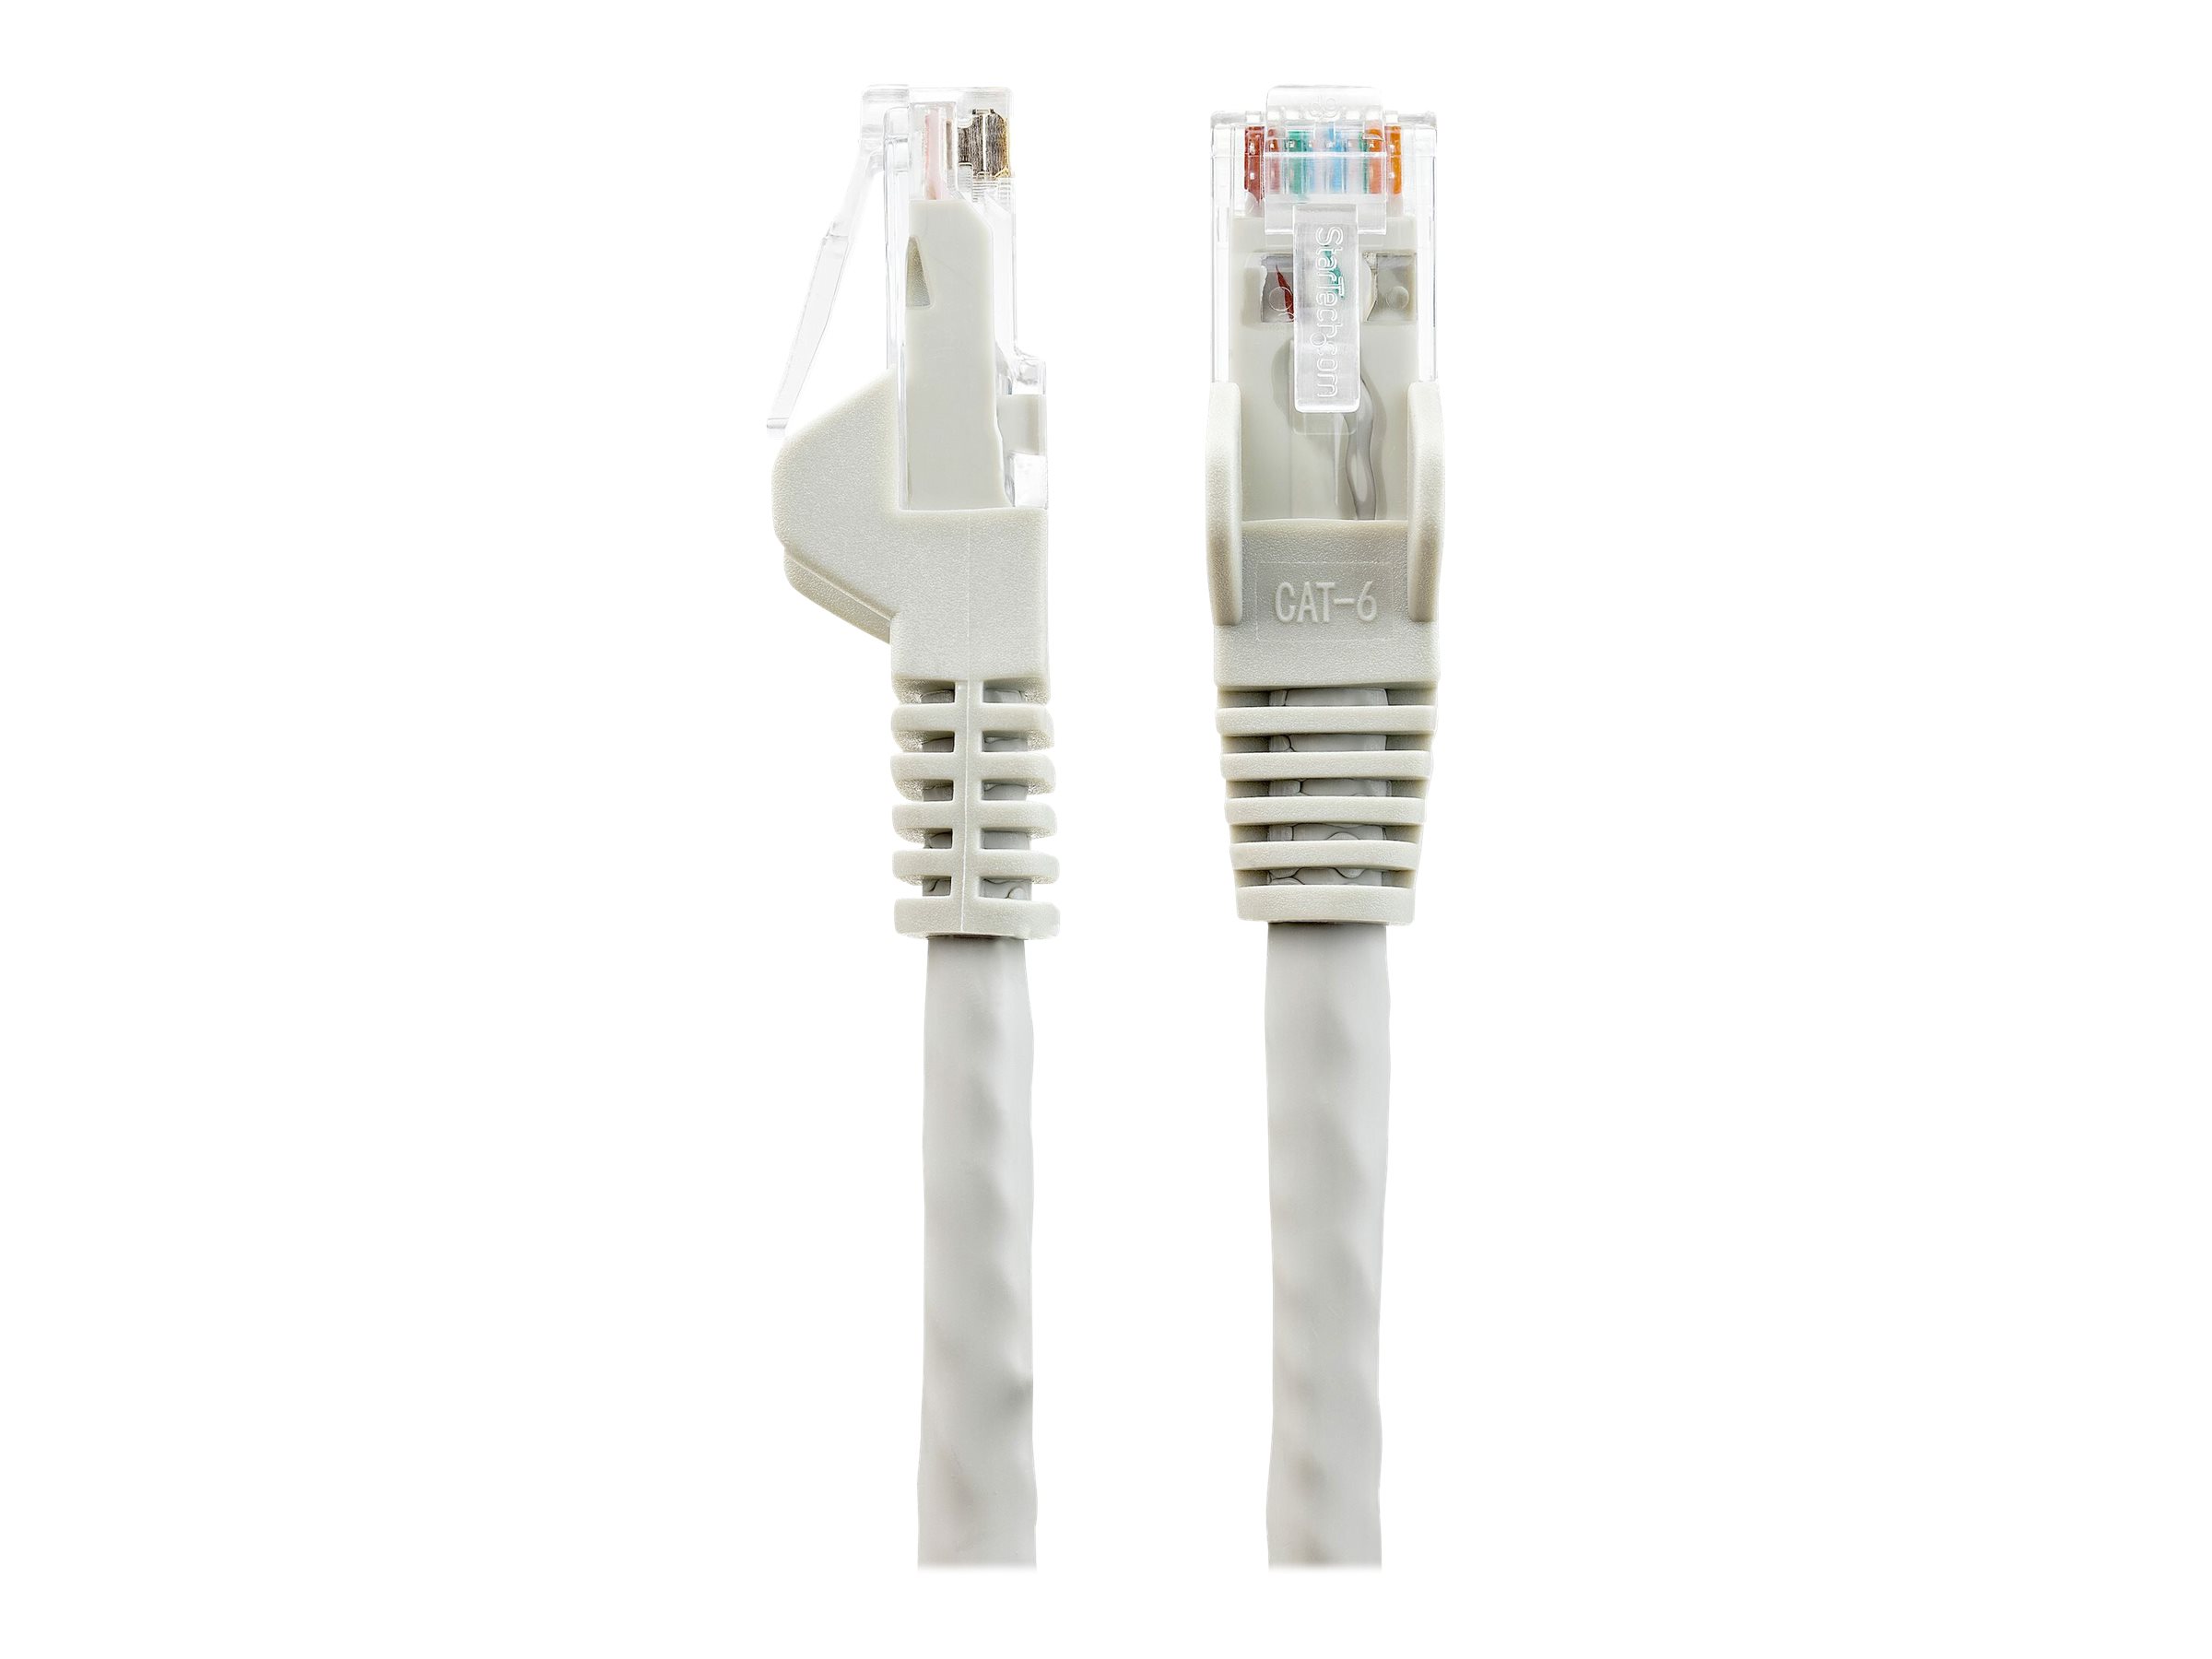 Cable Ethernet 10m Cat6 Plat Cable RJ45 10m Blanc, Gigabit Cable